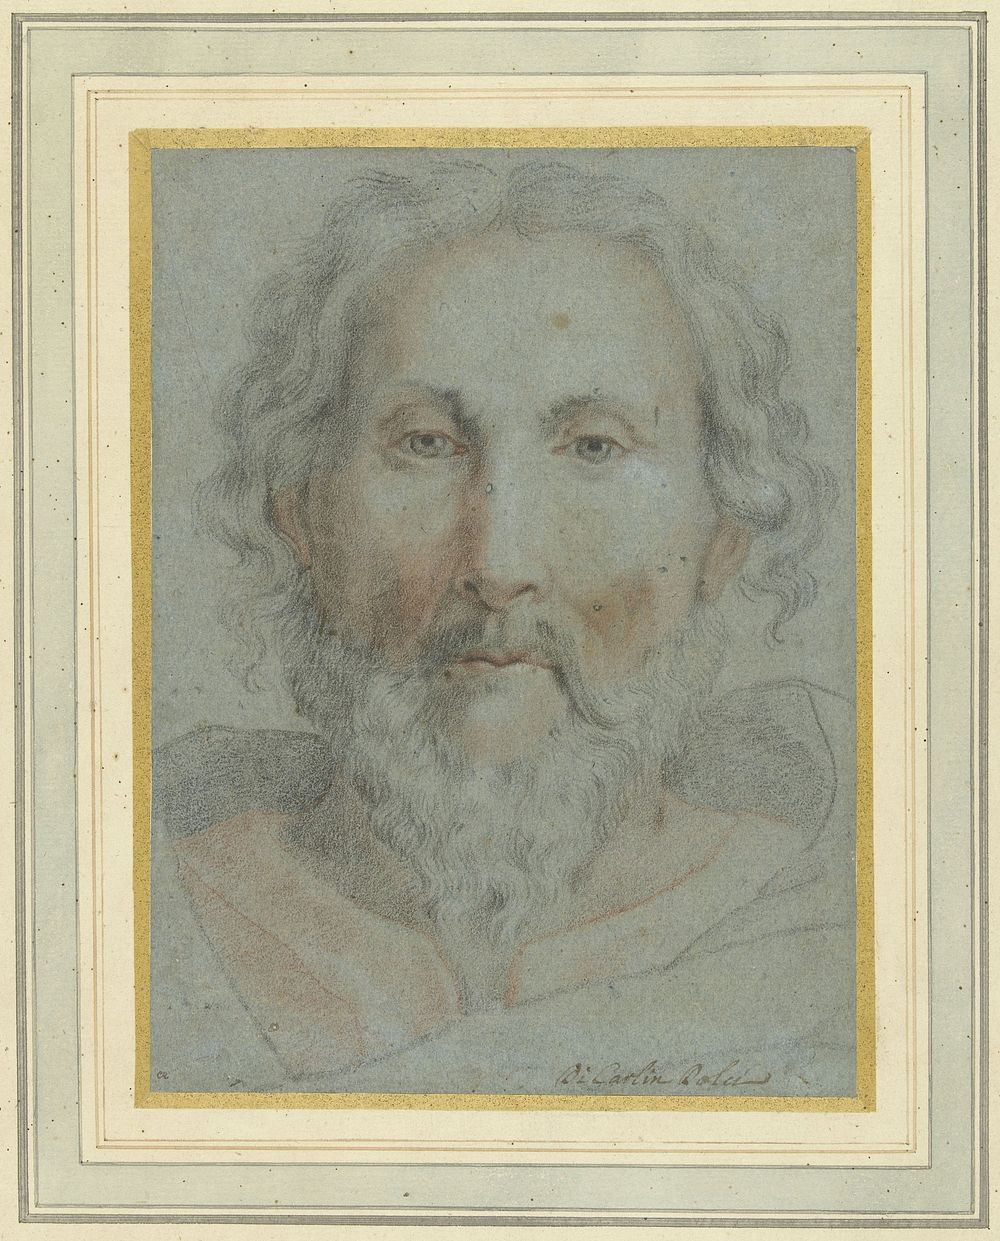 Hoofd van God de Vader (c. 1652 - c. 1662) by Carlo Dolci